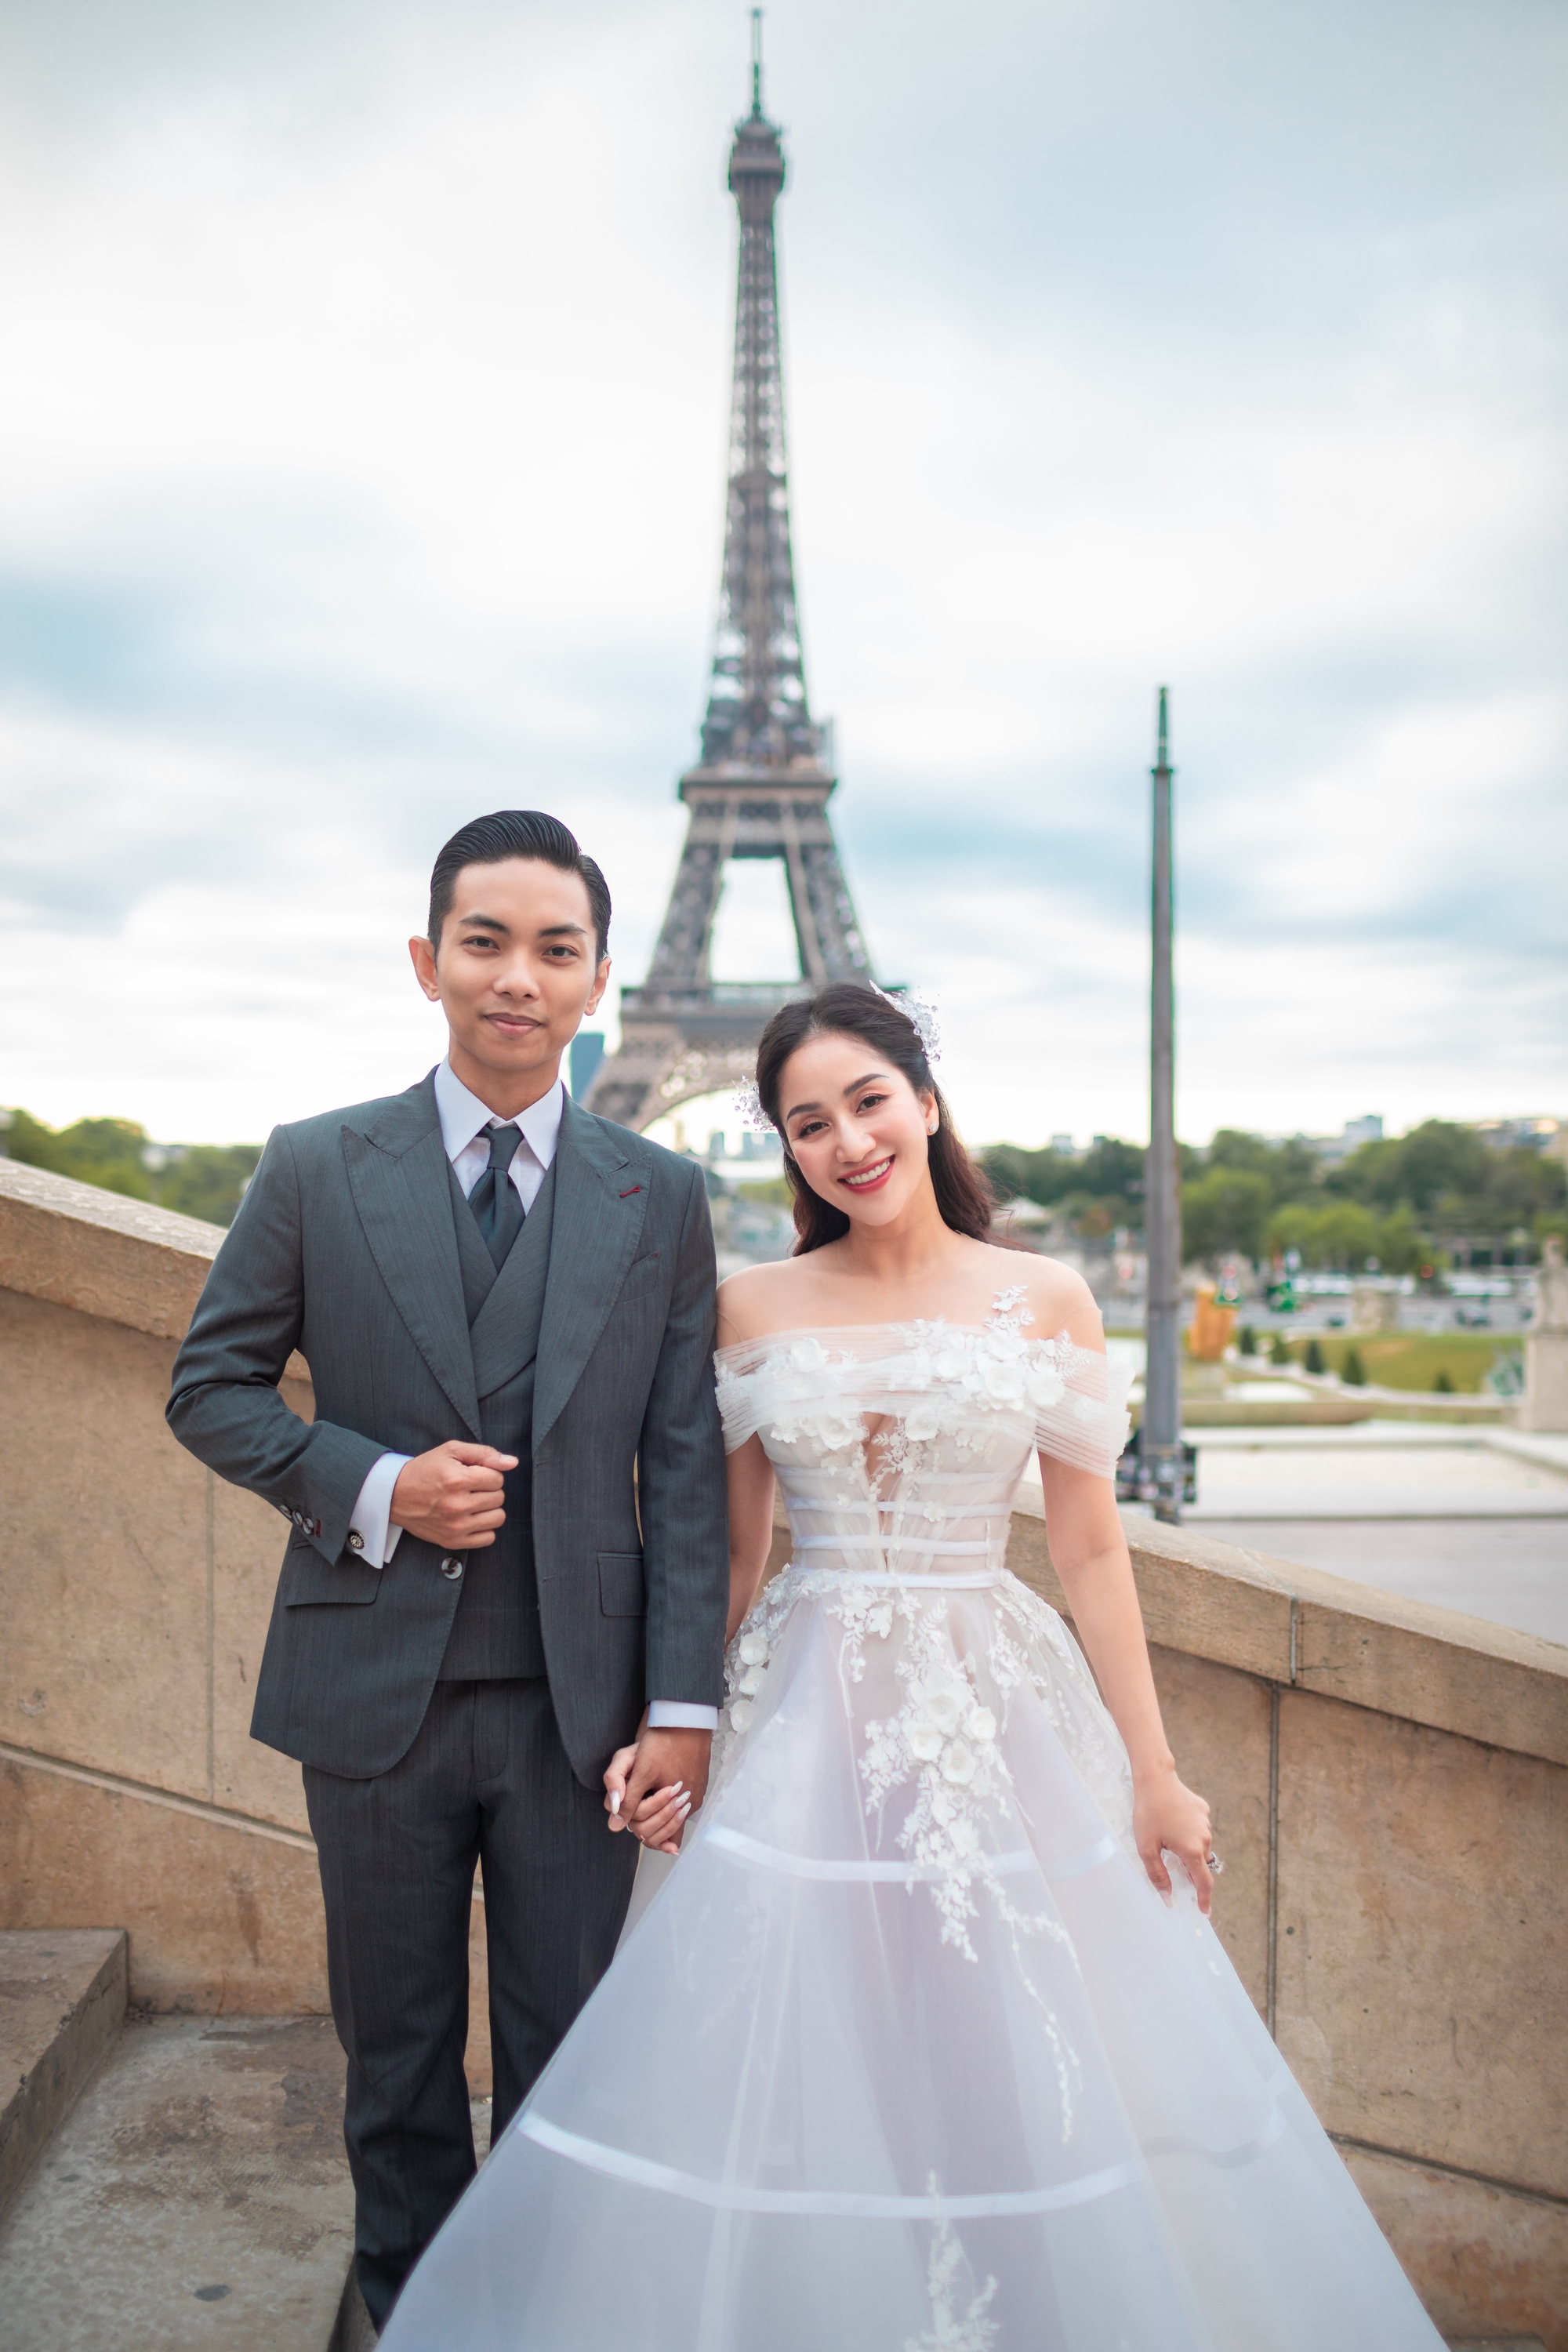 Khánh Thi và chồng của cô đã có một trong những bức ảnh cưới đẹp nhất để lưu giữ kỷ niệm ngày trọng đại. Bạn sẽ bị thu hút bởi sự độc đáo và tình cảm trong từng khung hình, đó là sự kỳ diệu của hôn nhân.